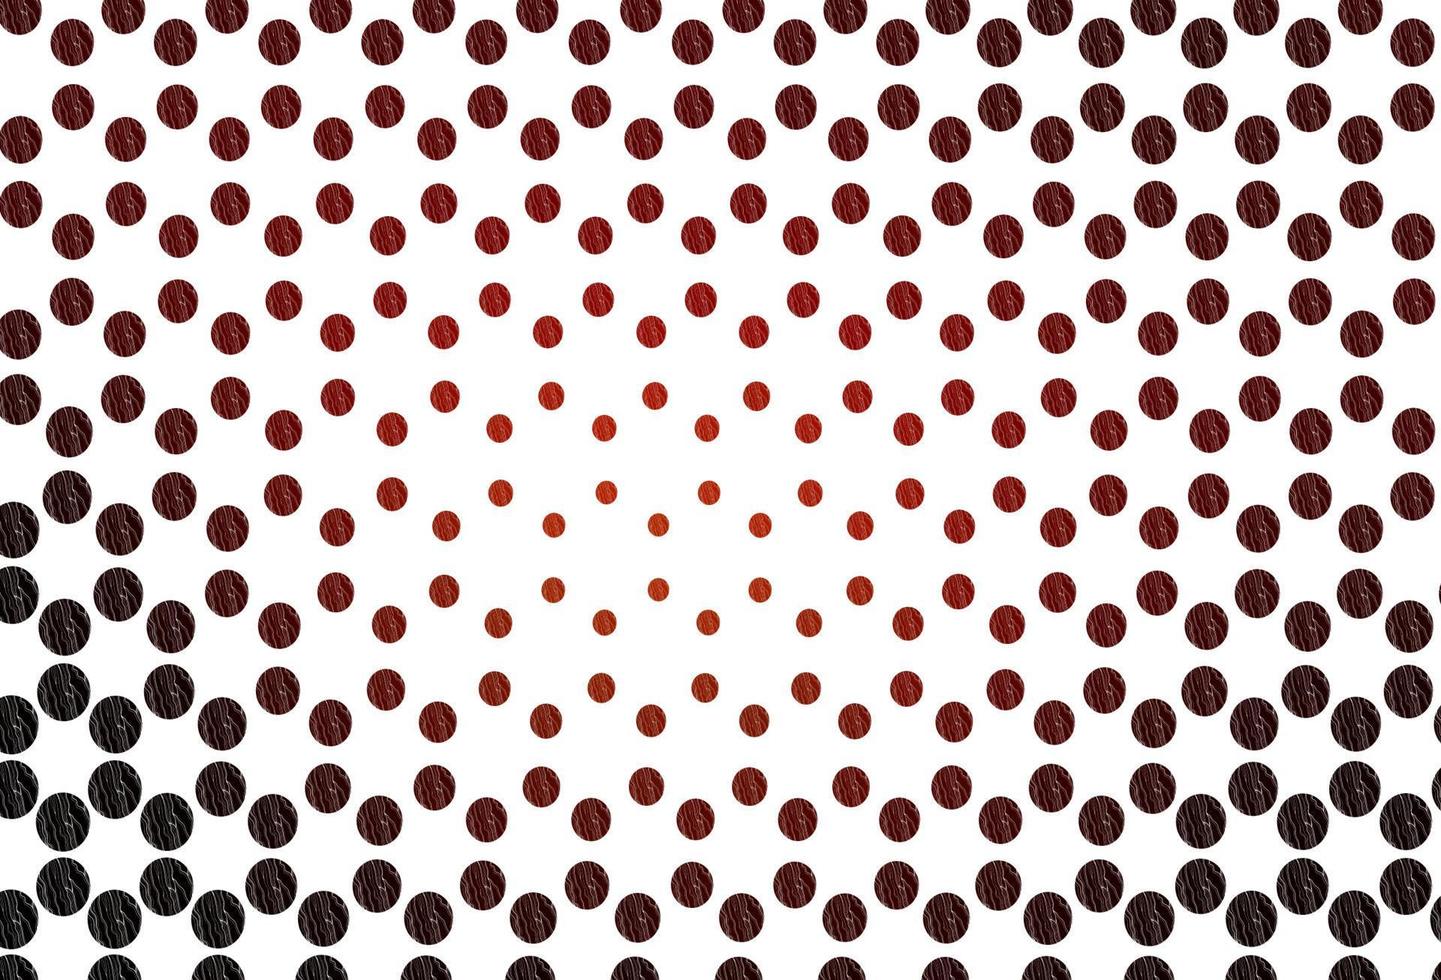 patrón de vector rojo claro con esferas.